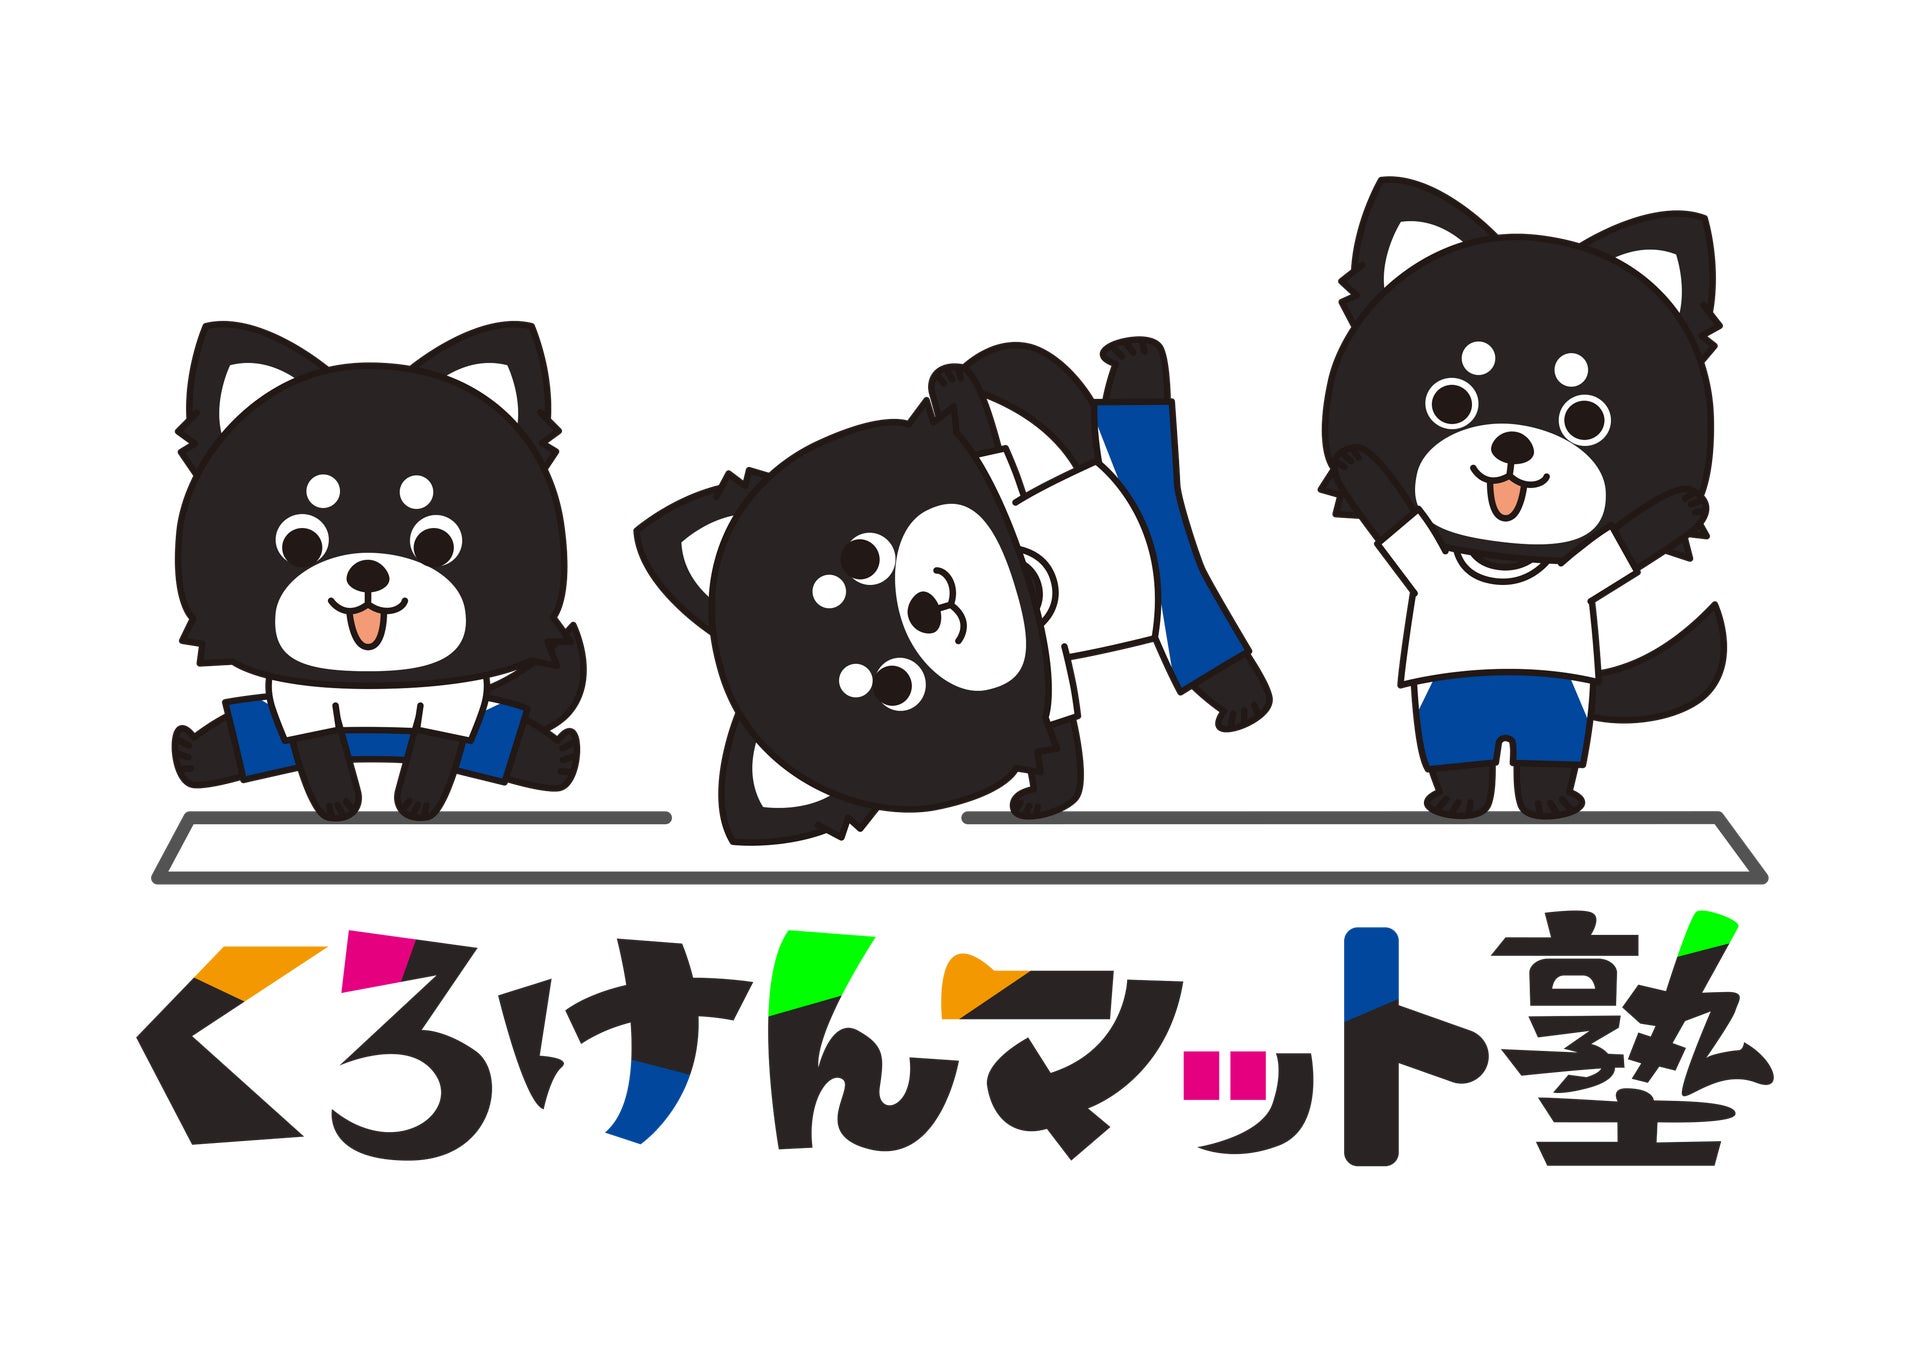 東員町の体操教室「くろけんマット塾」が公式ロゴマークを発表